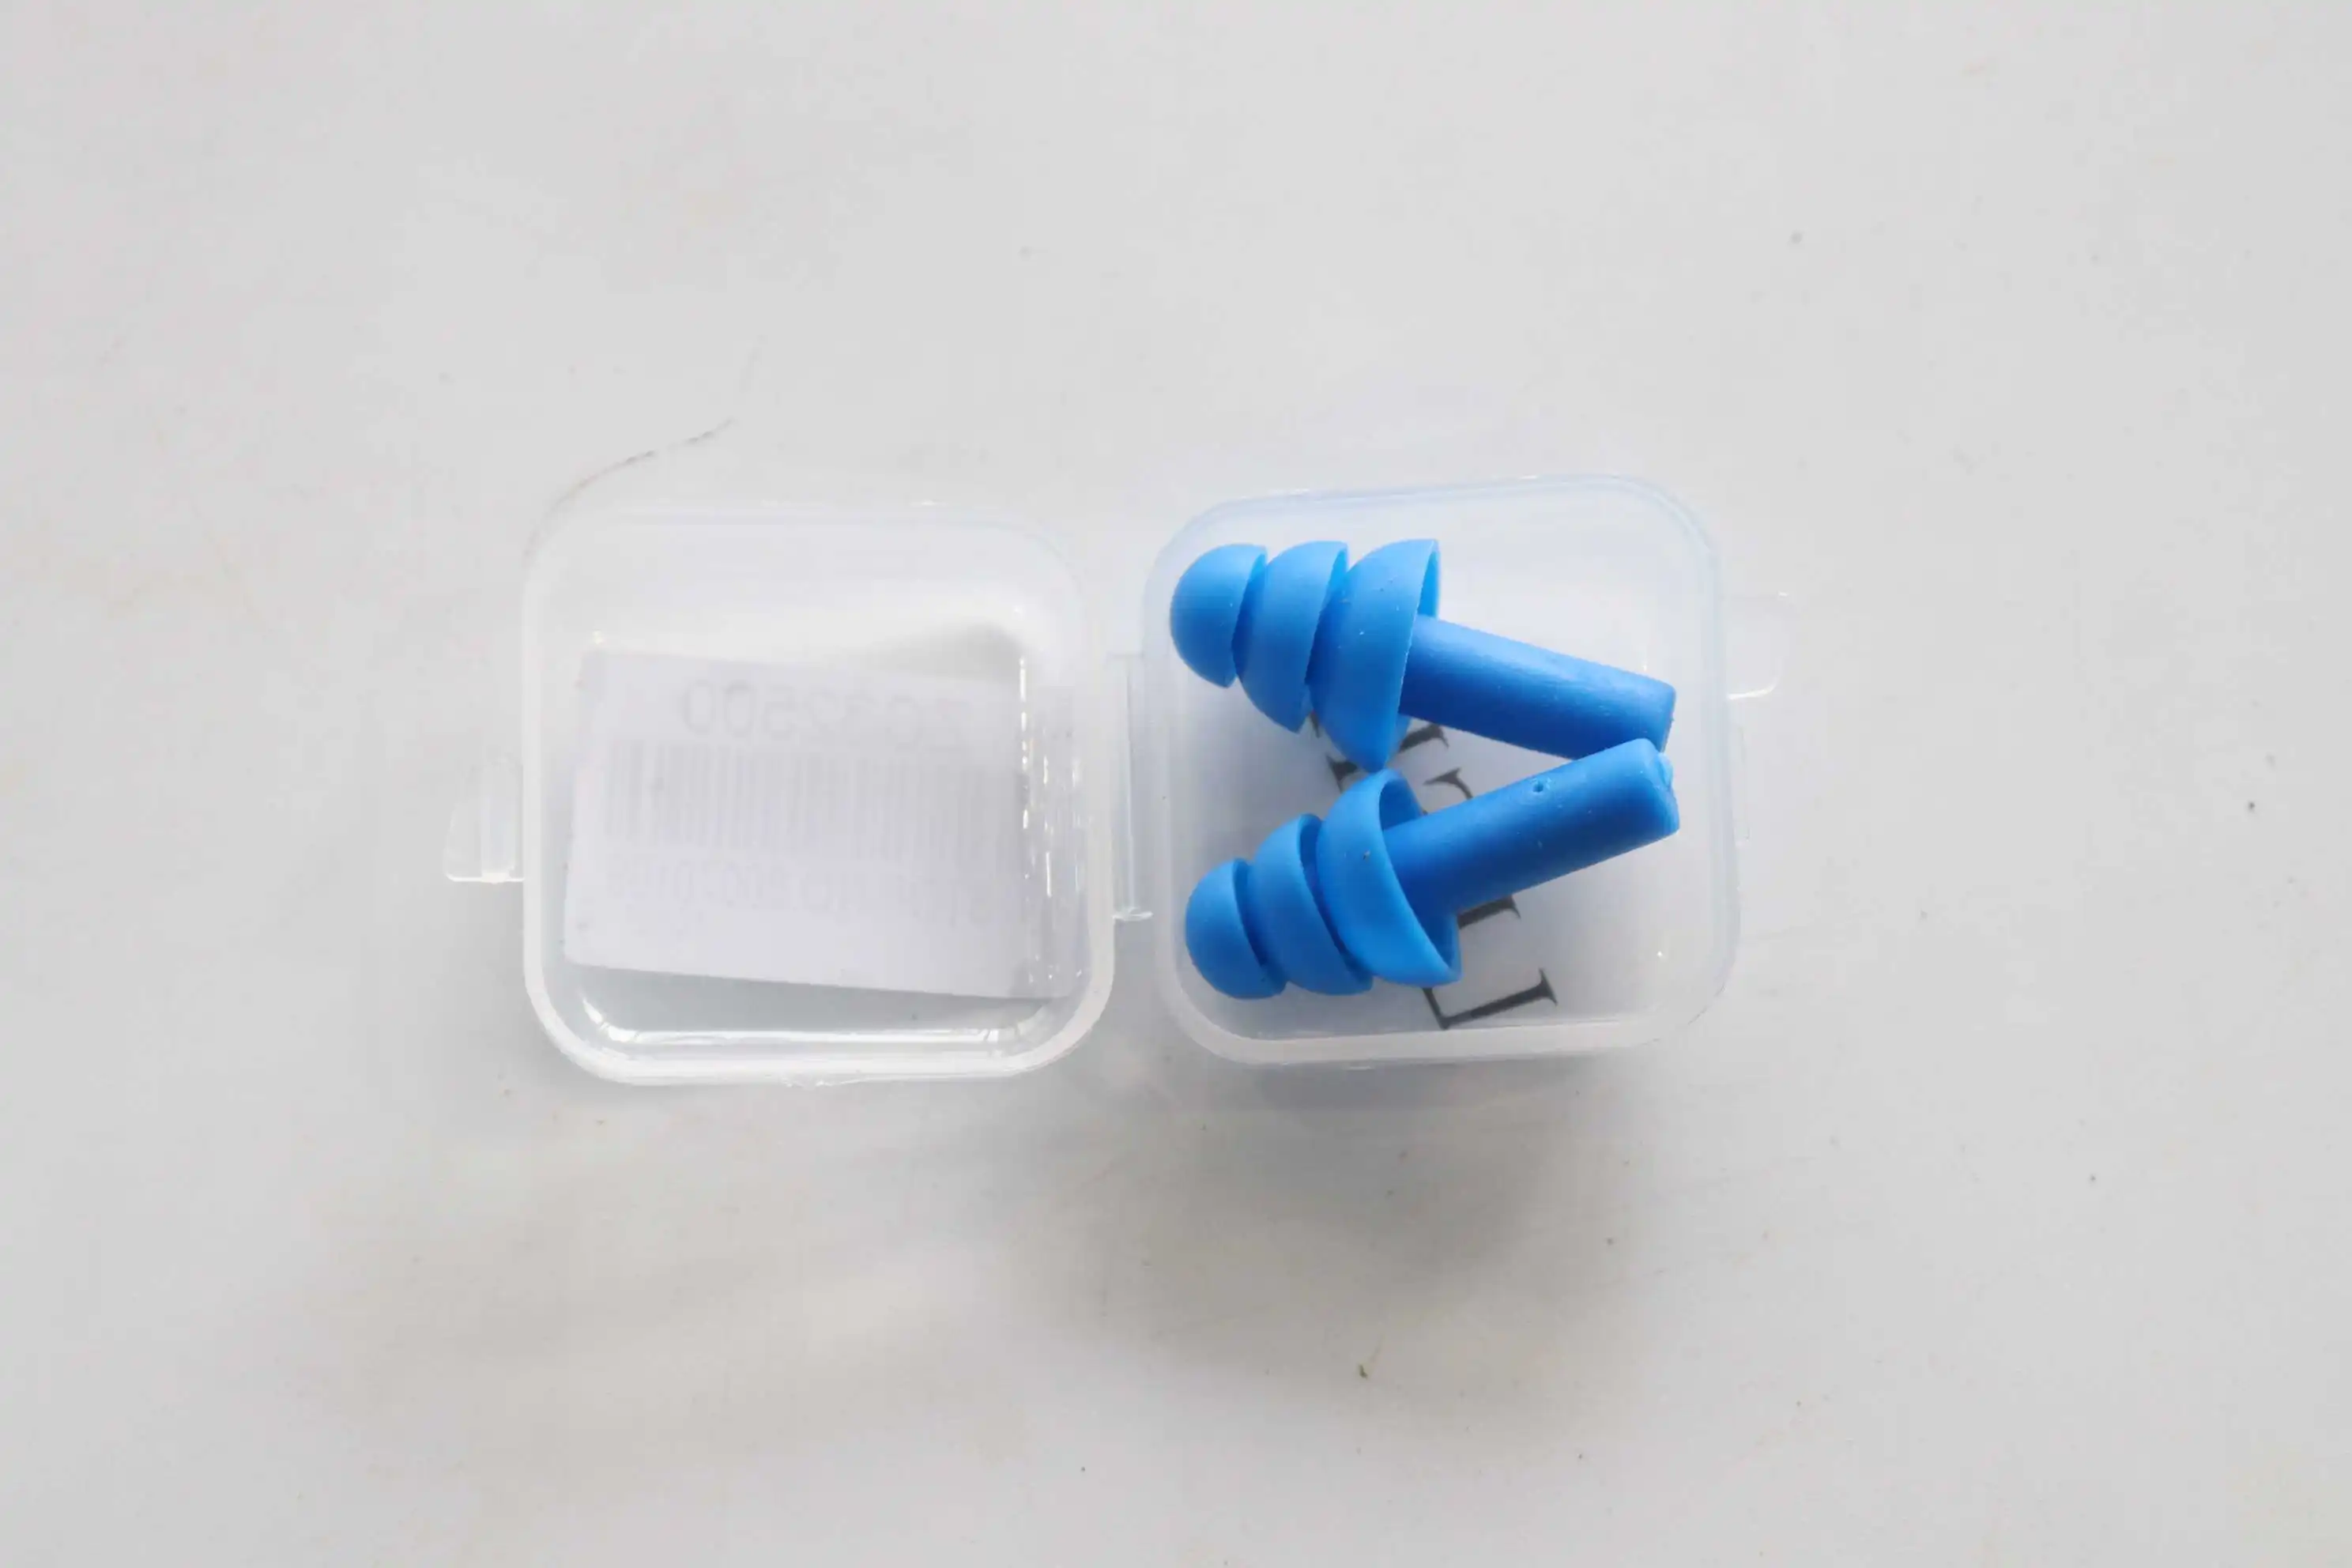 Пара спиральный удобный силикон затычки для ушей анти шум храп беруши удобные для сна шумоподавление аксессуар